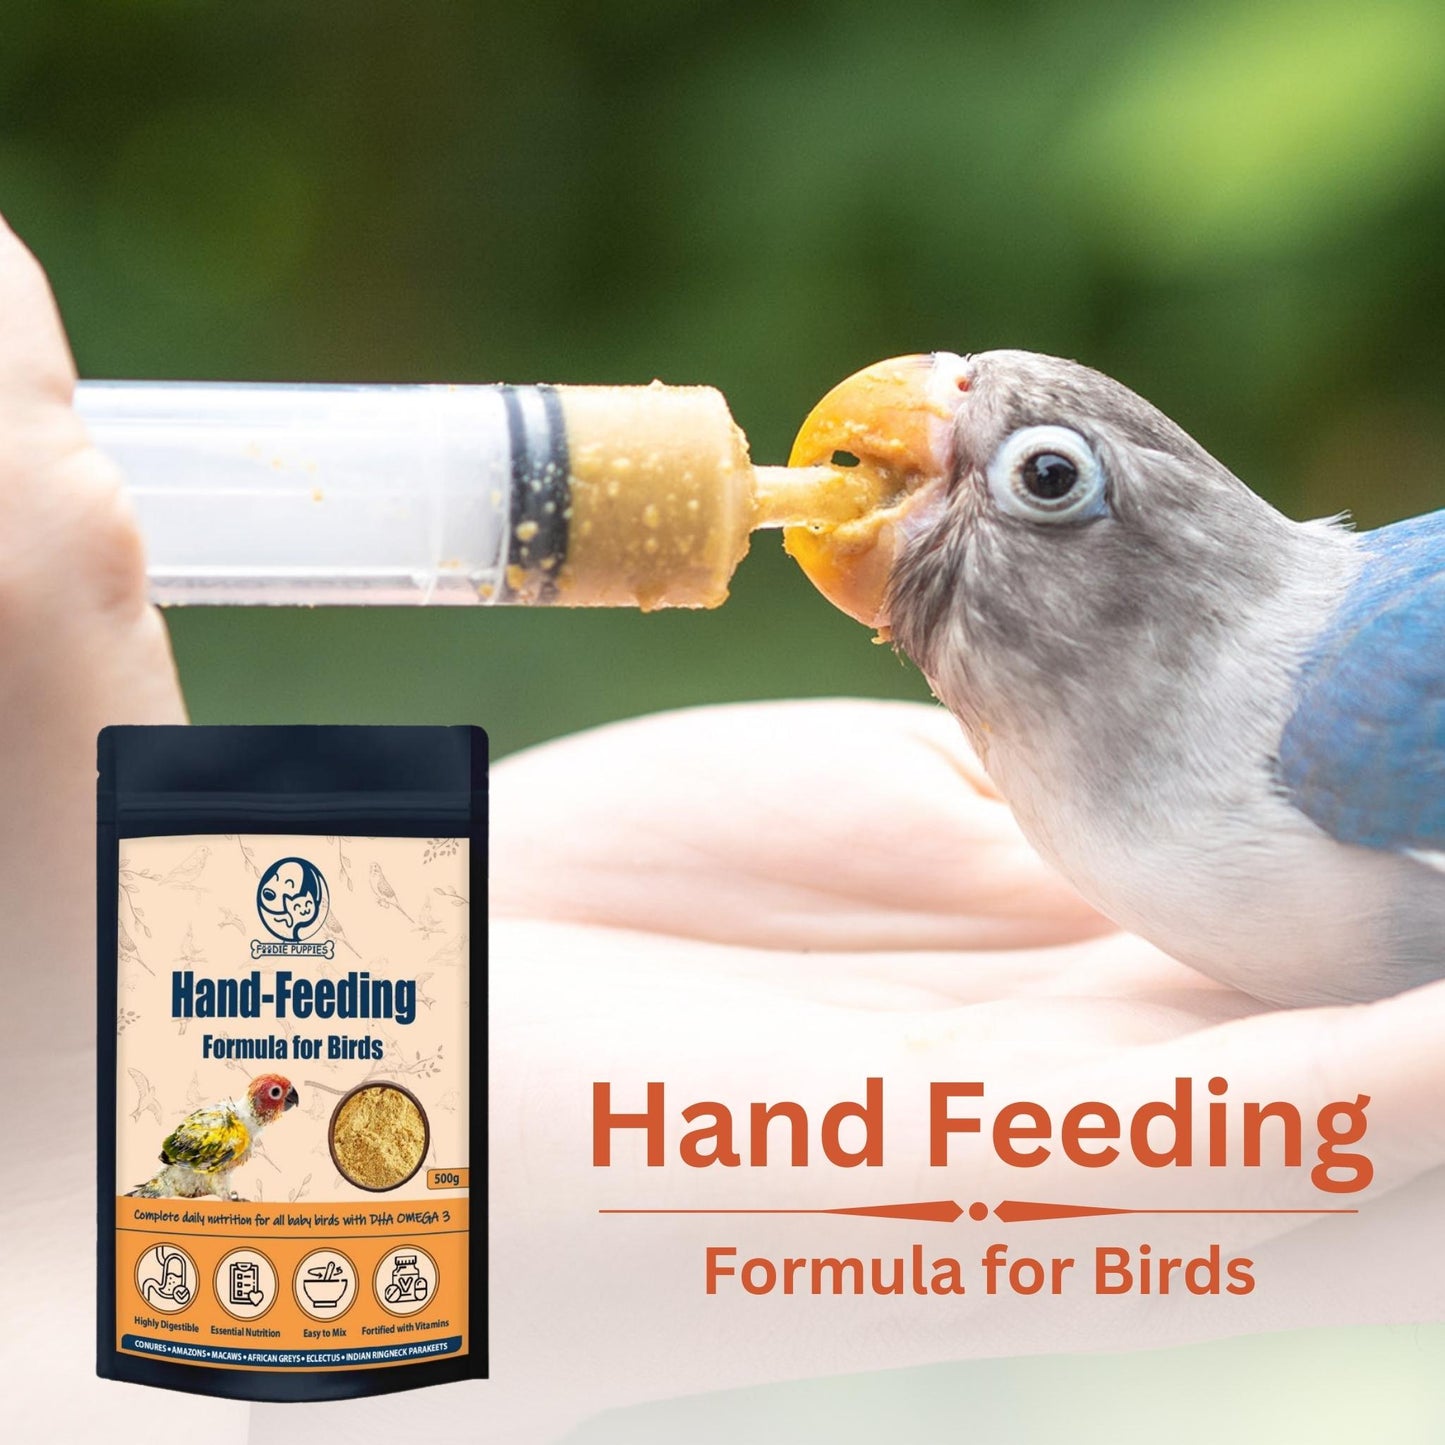 Hand Feeding formula for birds